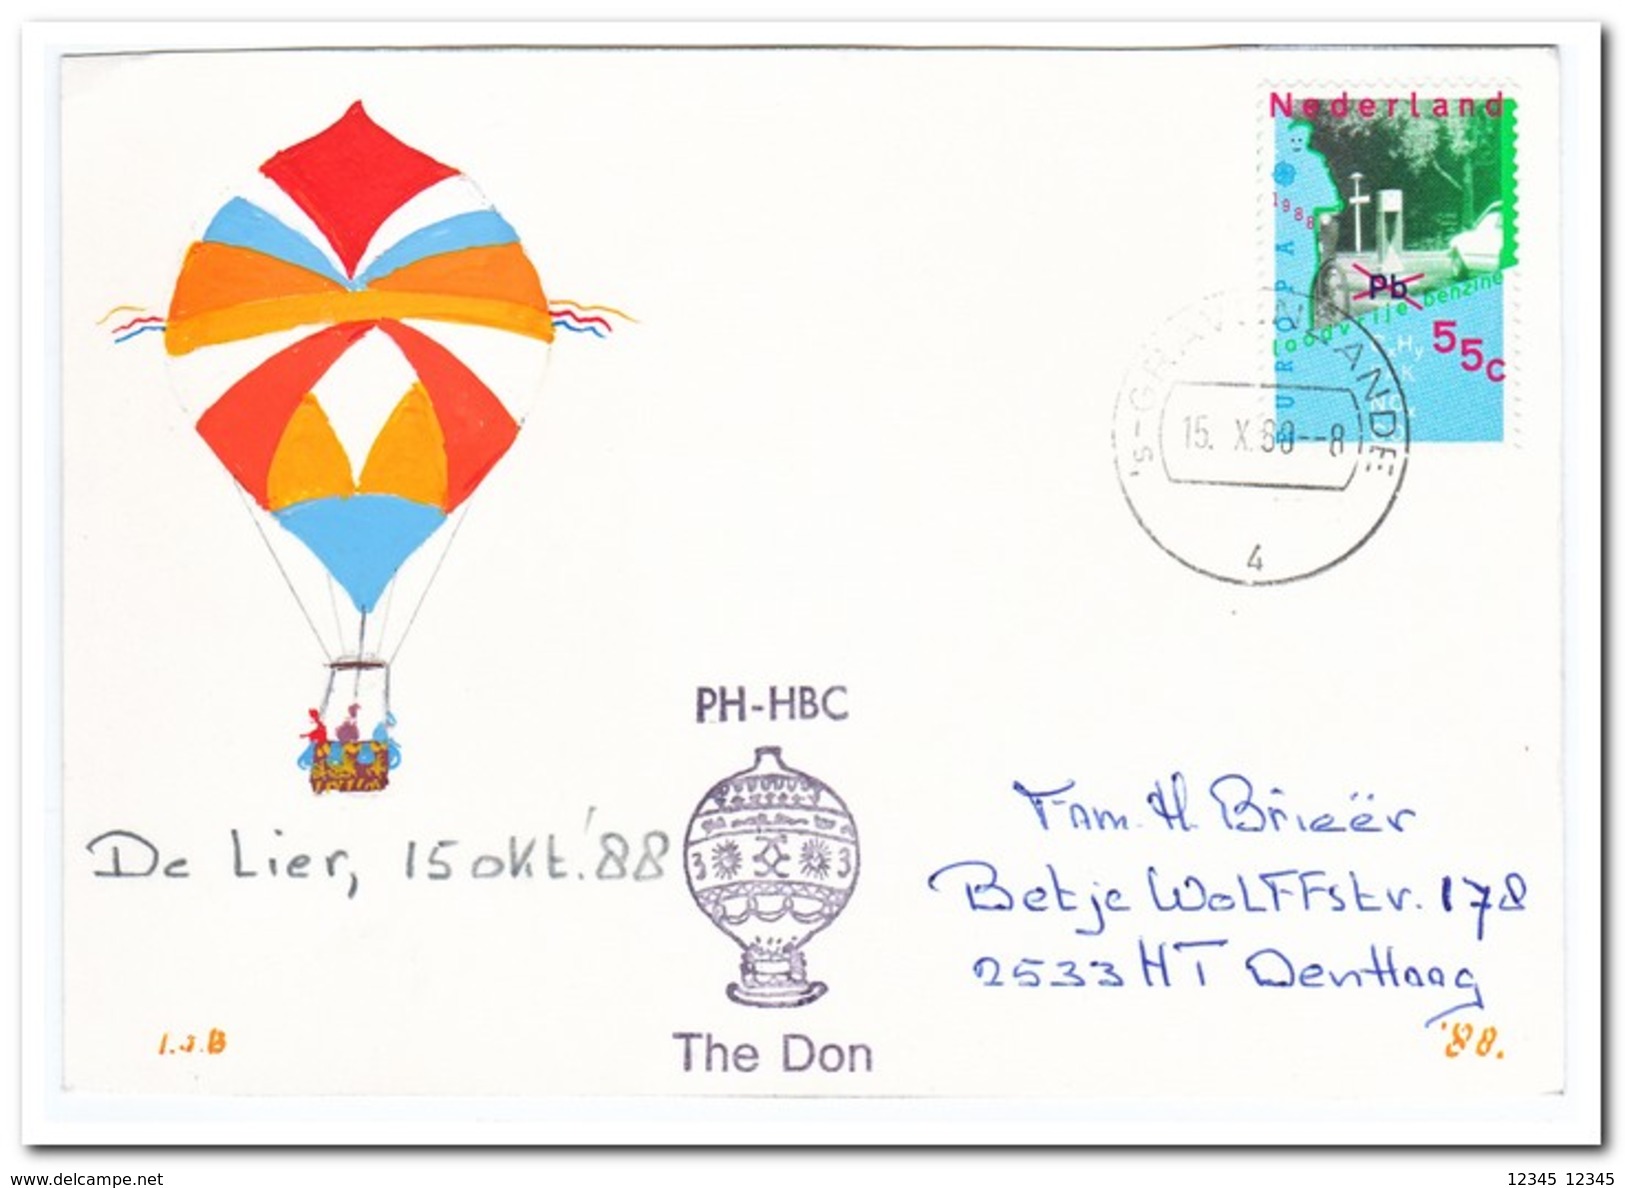 Ballonvaart De Lier 15-10-1988, The Don - Airships